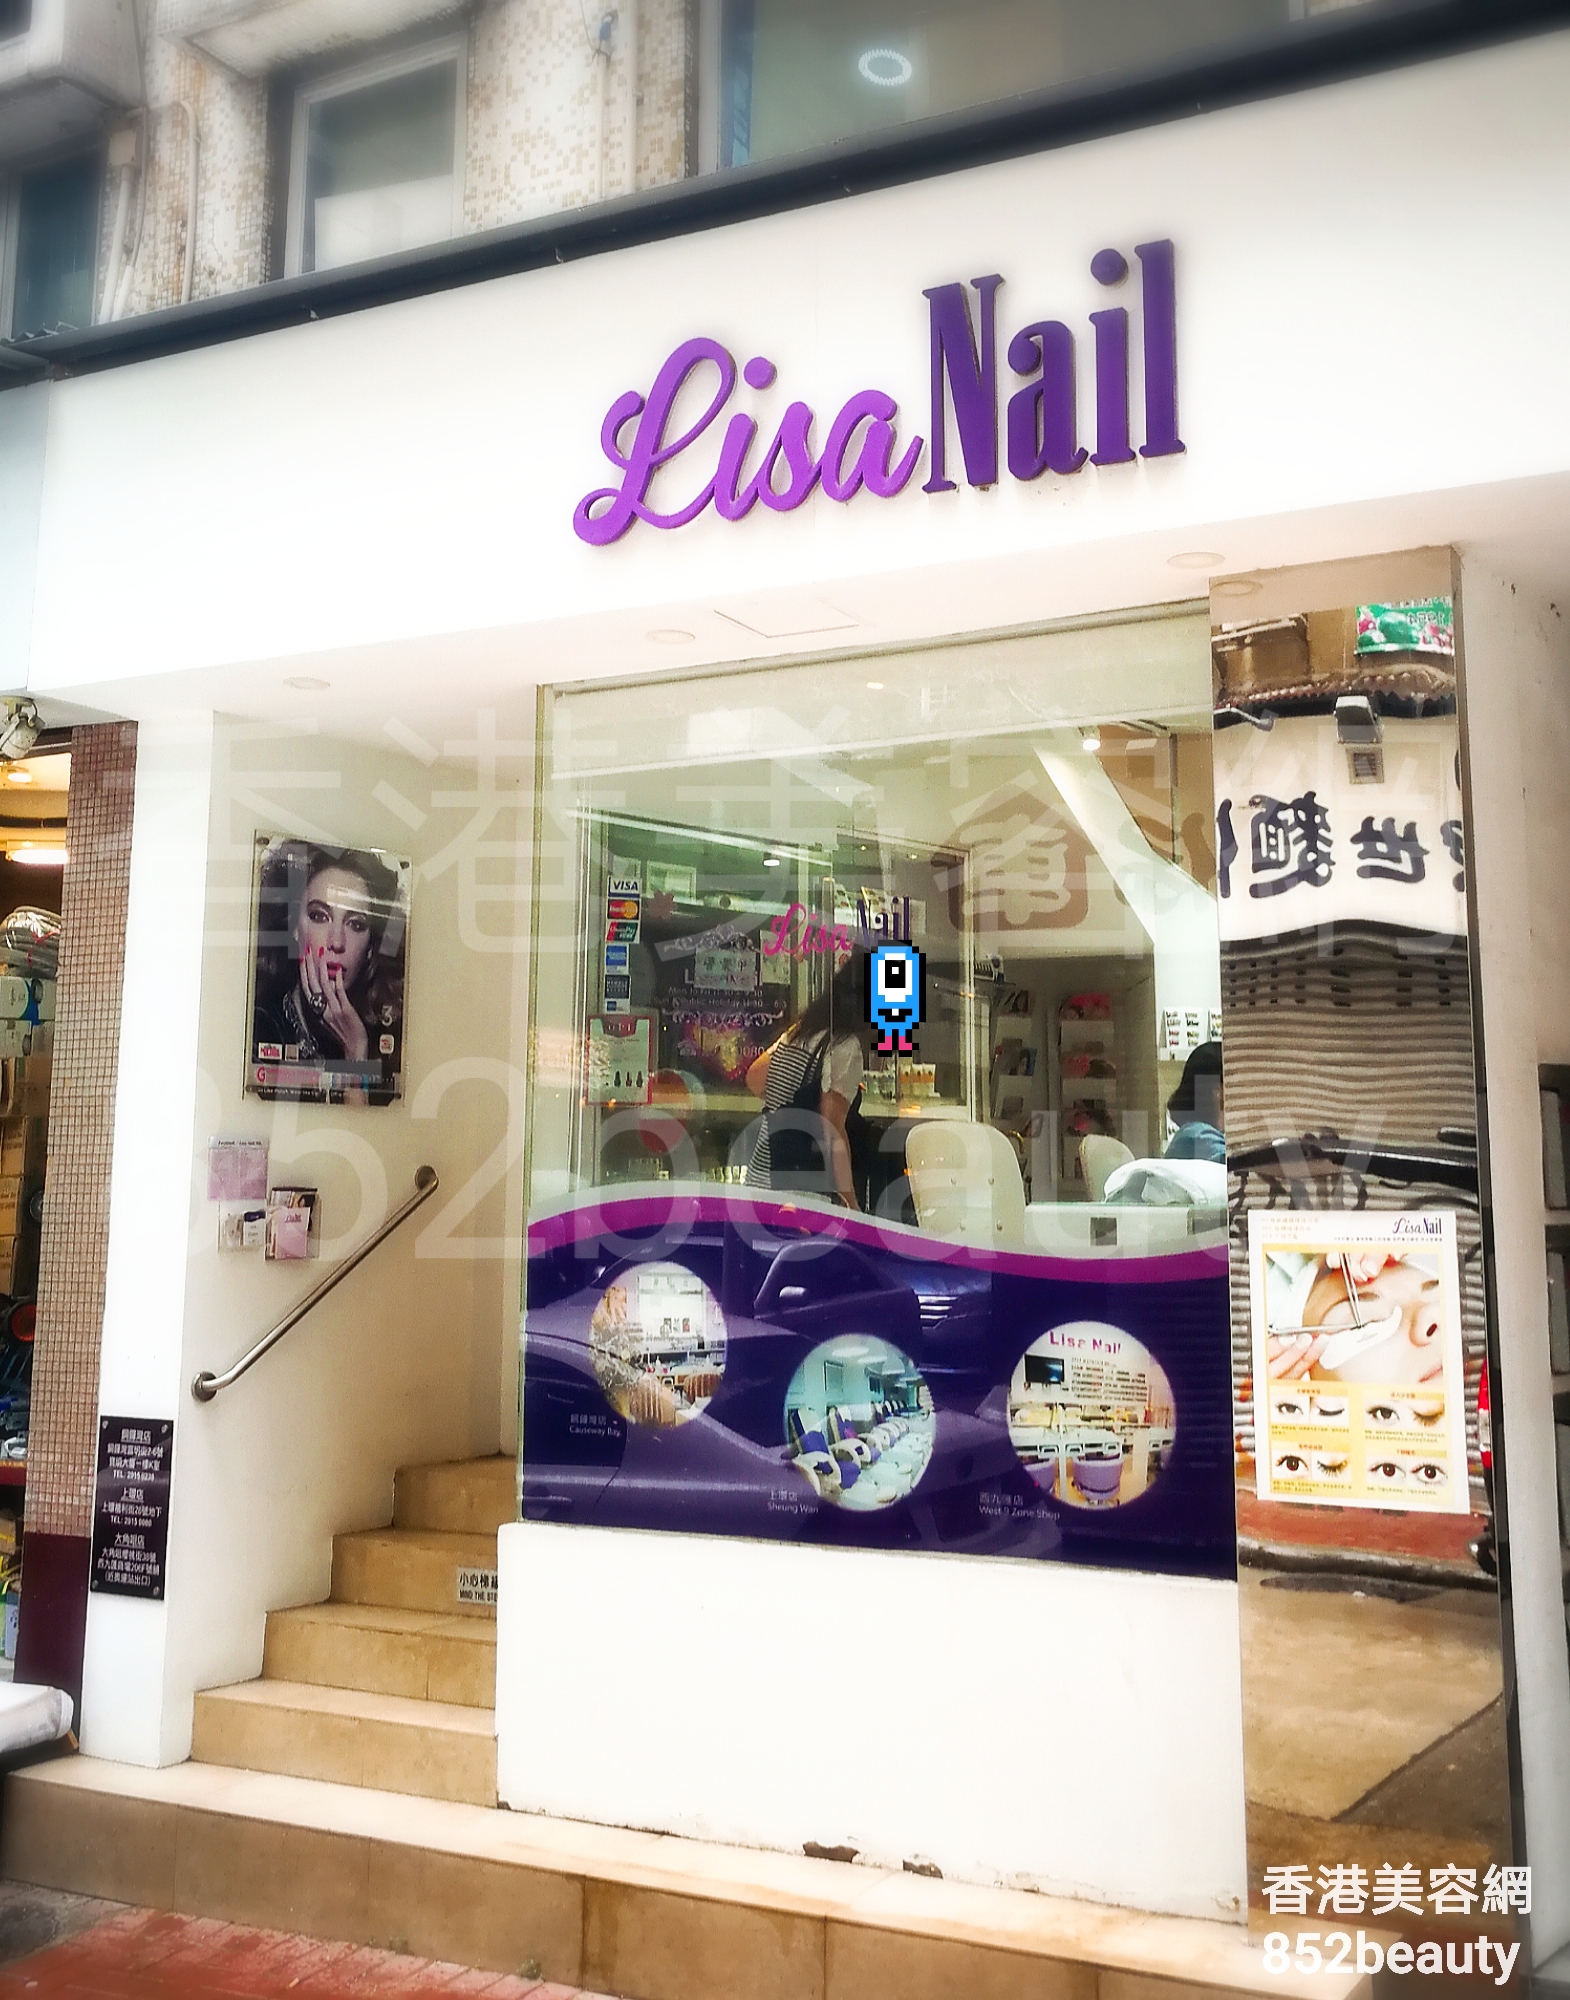 Hong Kong Beauty Salon Beauty Salon / Beautician: Lisa Nail (上環店)